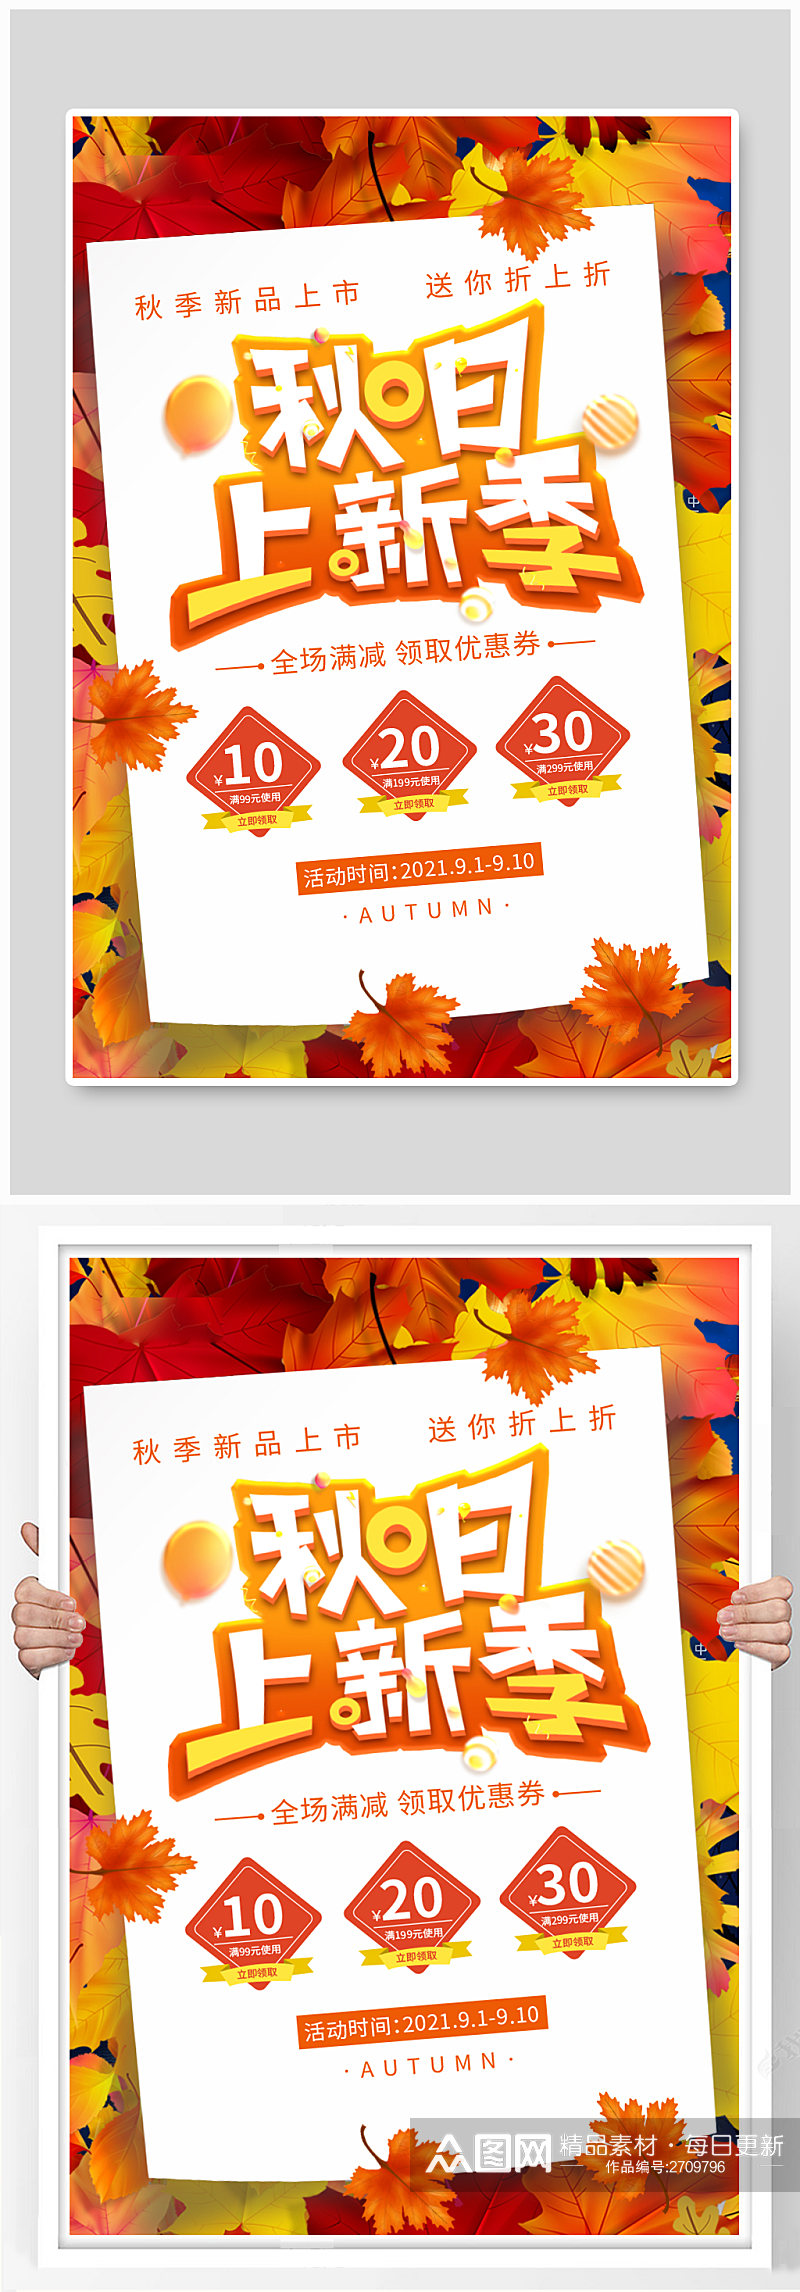 秋季上新枫叶橙色简约海报素材